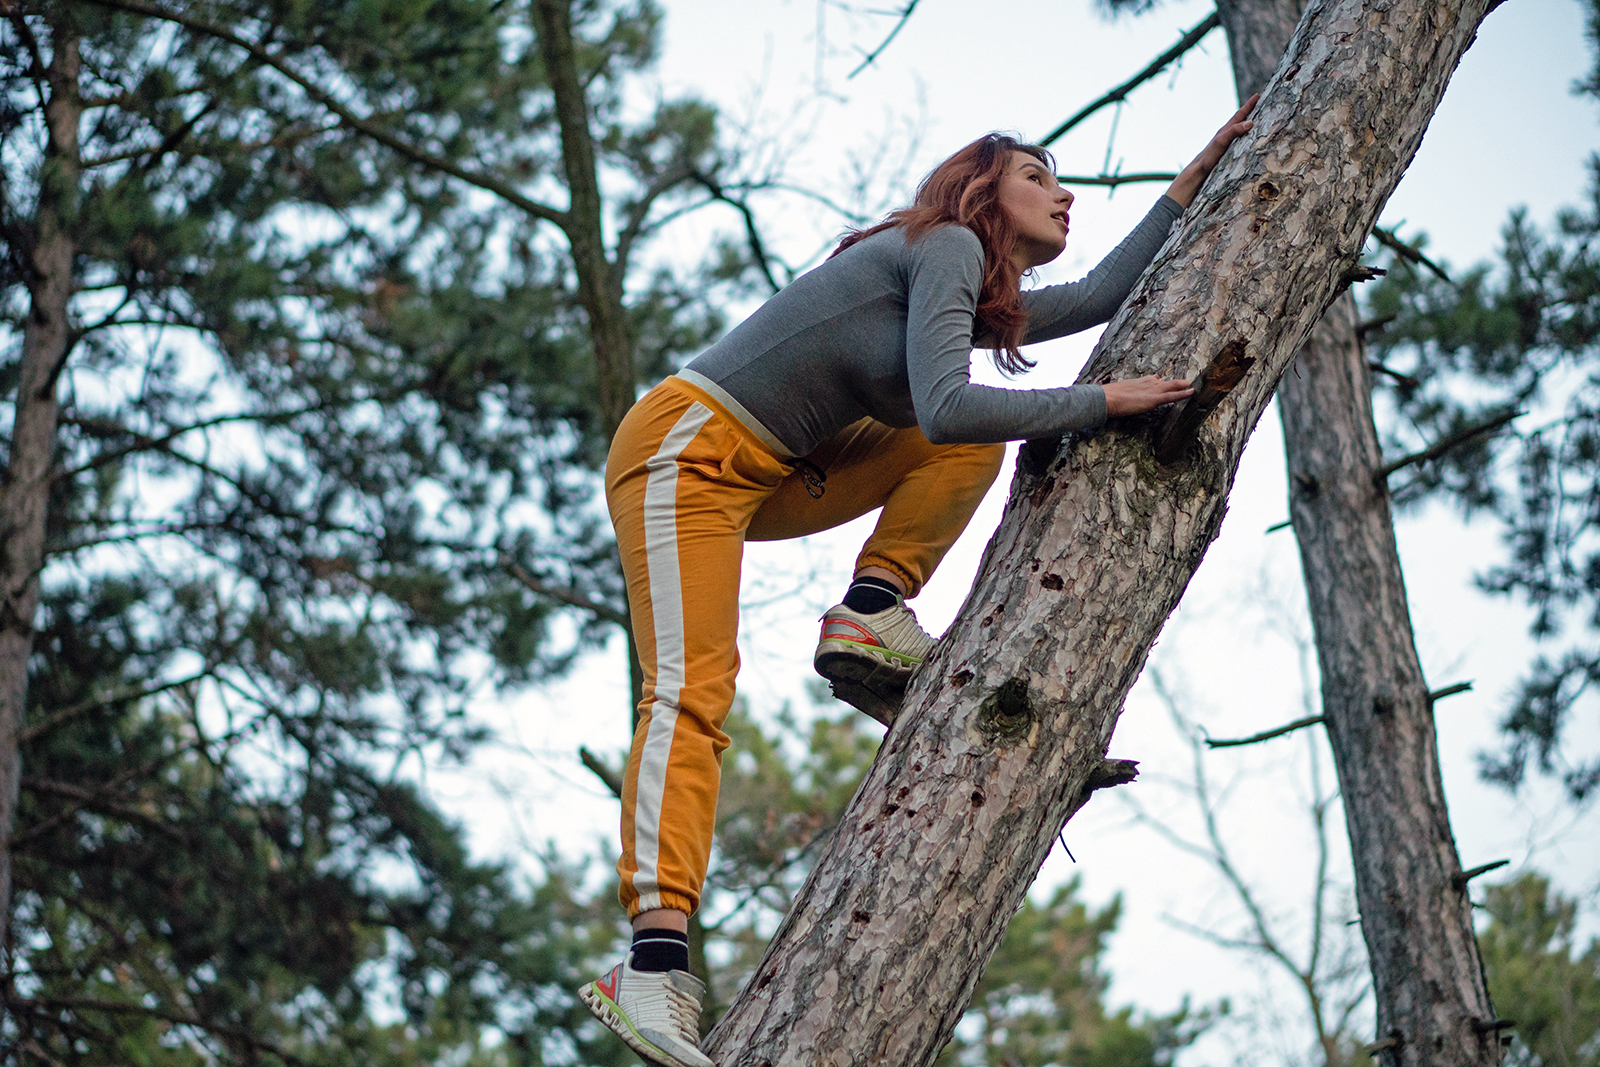 Young woman climbing a tree. Photo: Shutterstock